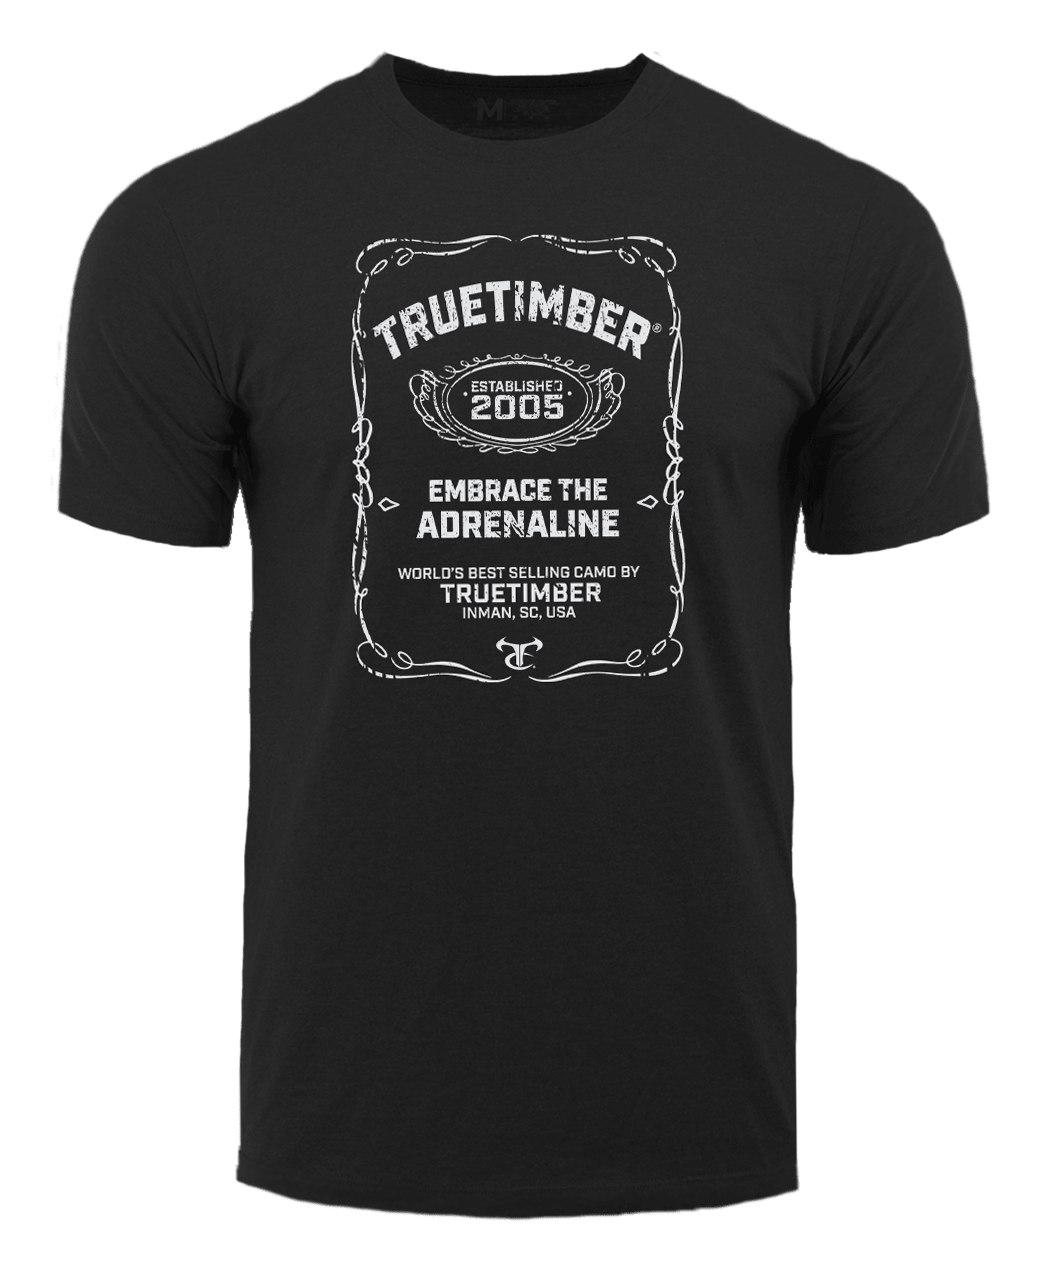 TrueTimber Embrace The Adrenaline Short-Sleeve T-Shirt for Men - Black - XL